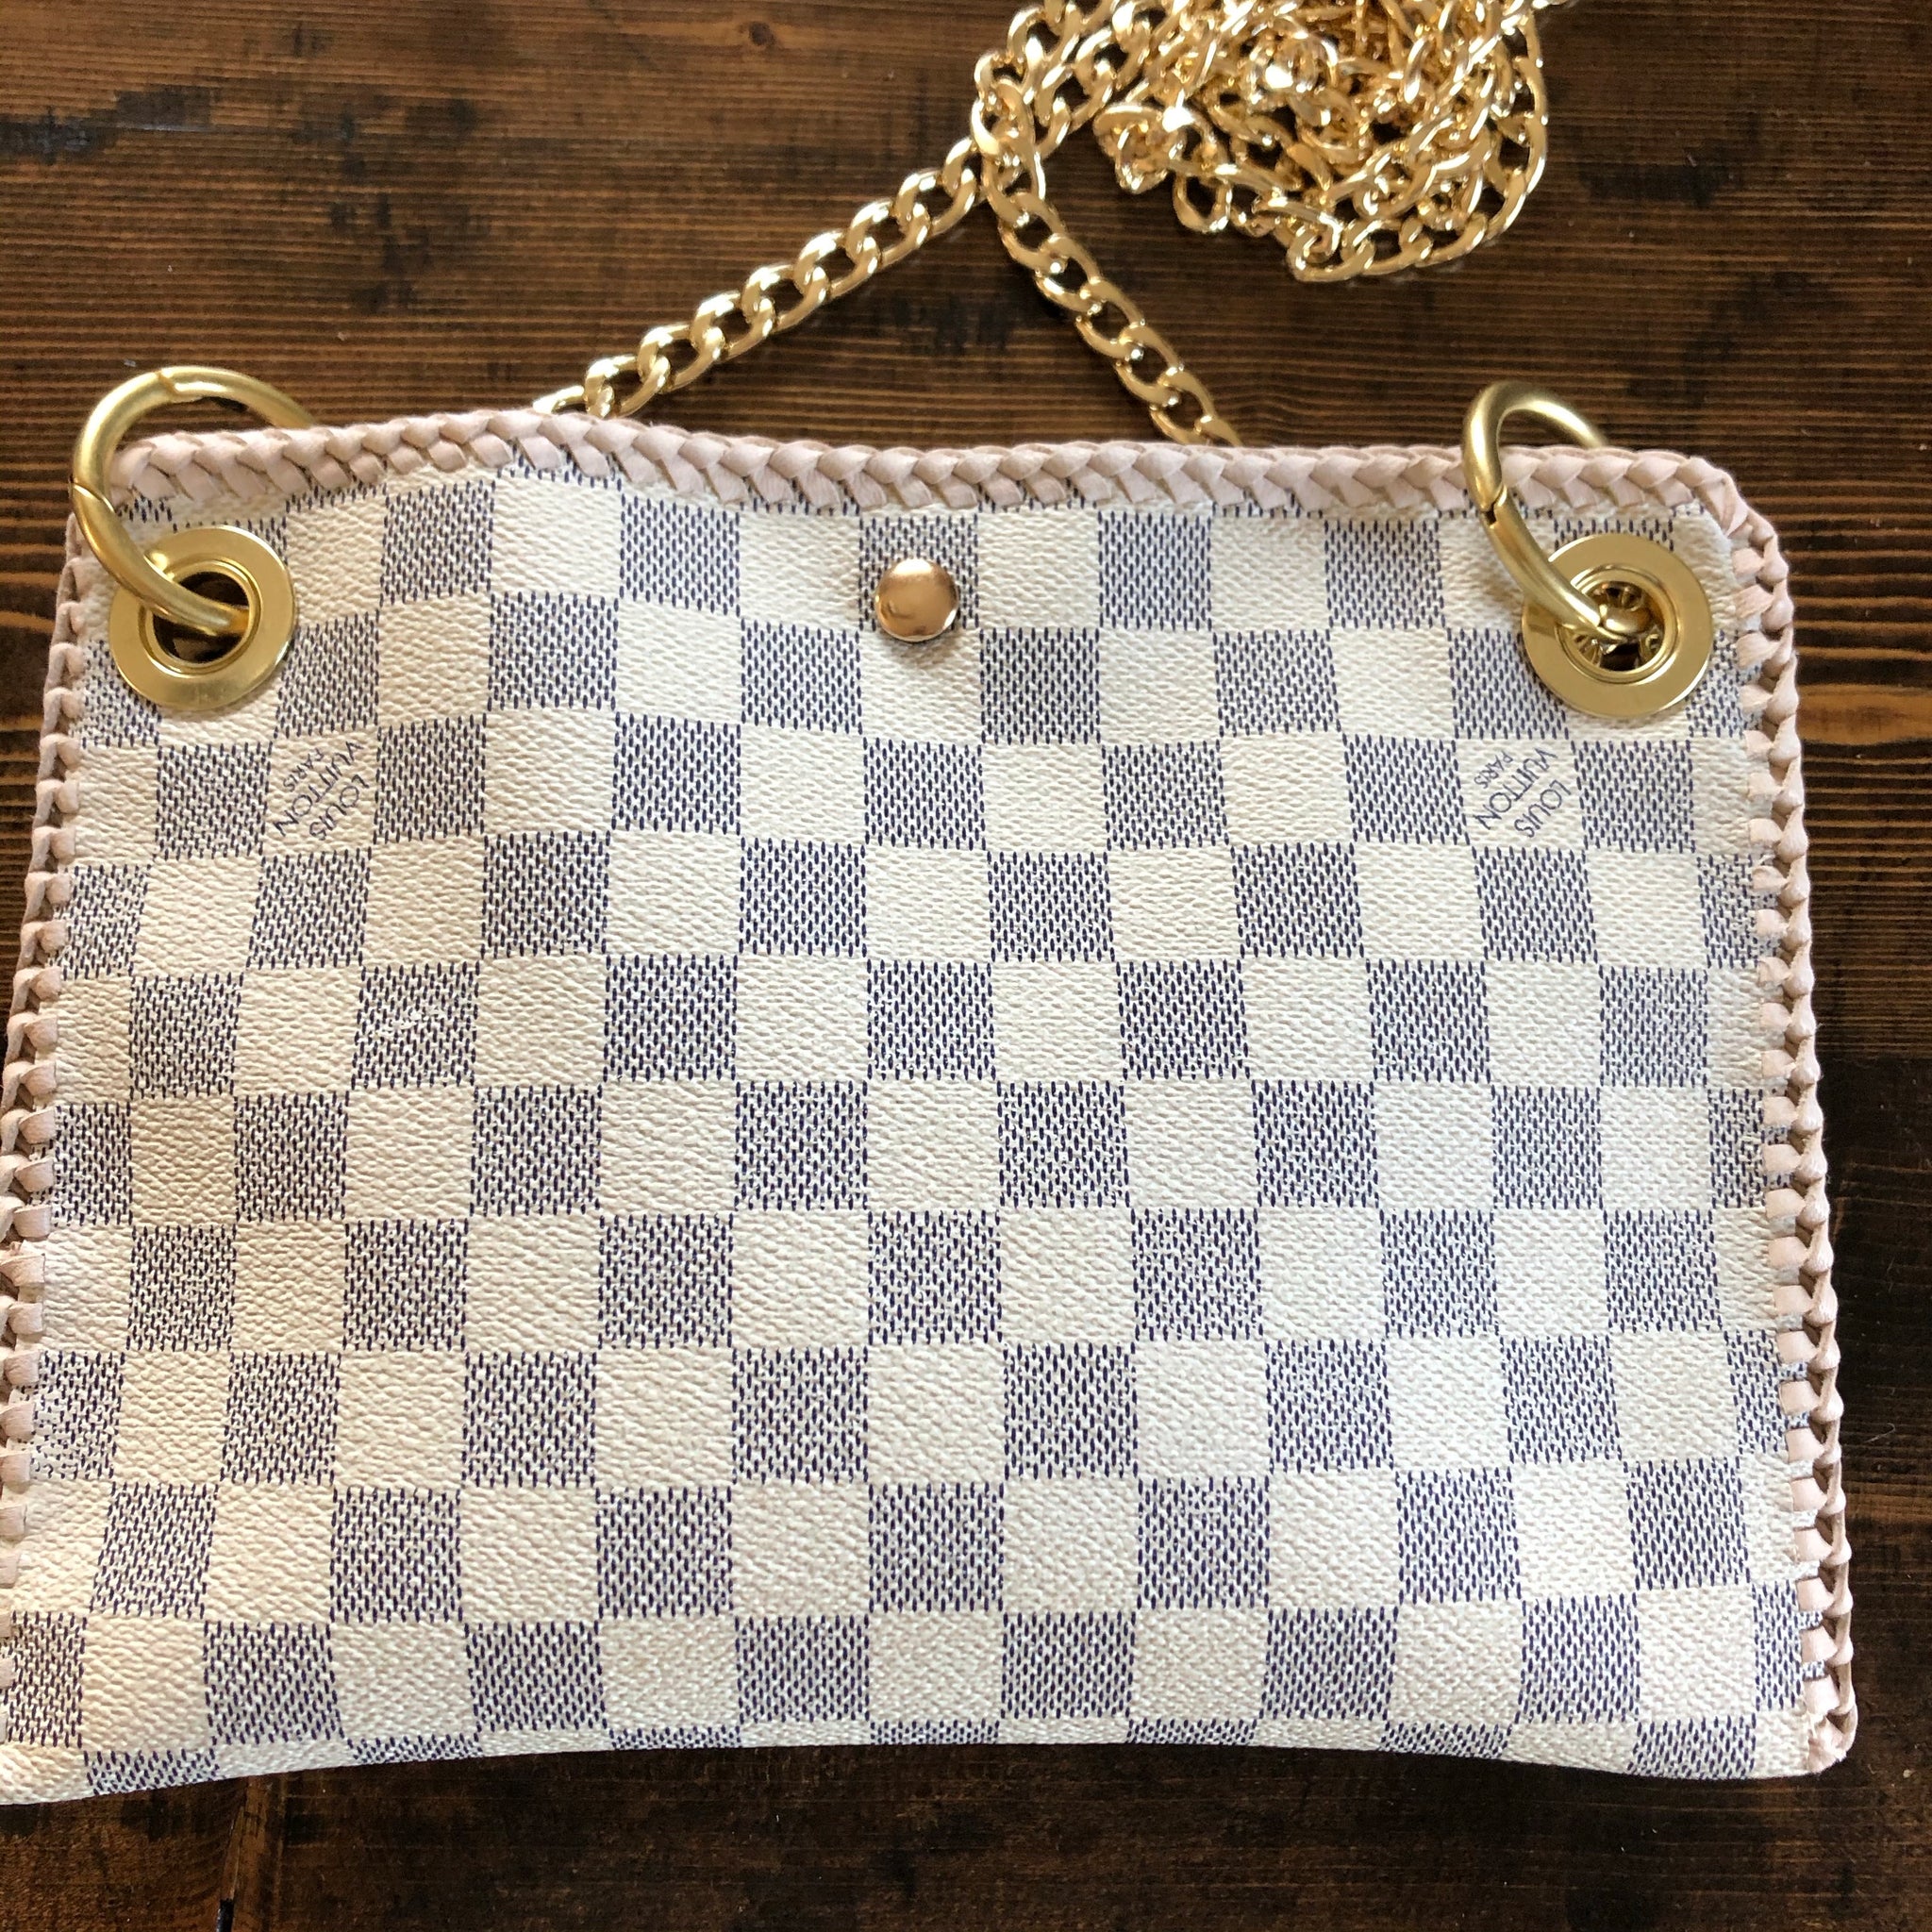 Louis Vuitton old pattern chain shoulder bag